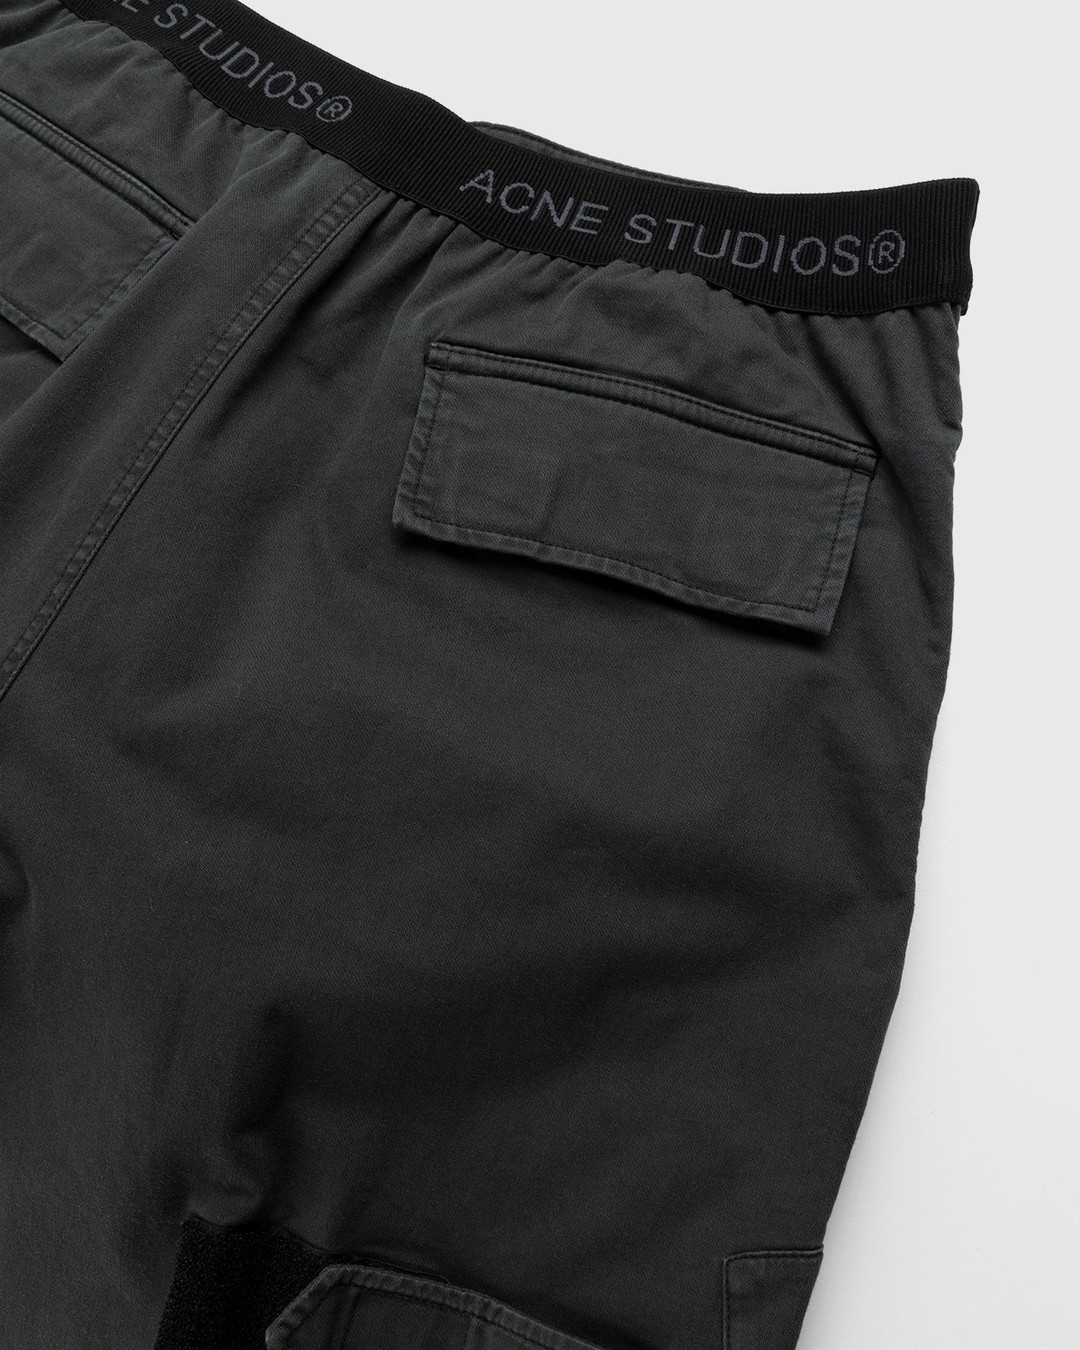 Acne Studios – Chevron Cargo Pants Anthracite Grey - Pants - Grey - Image 4